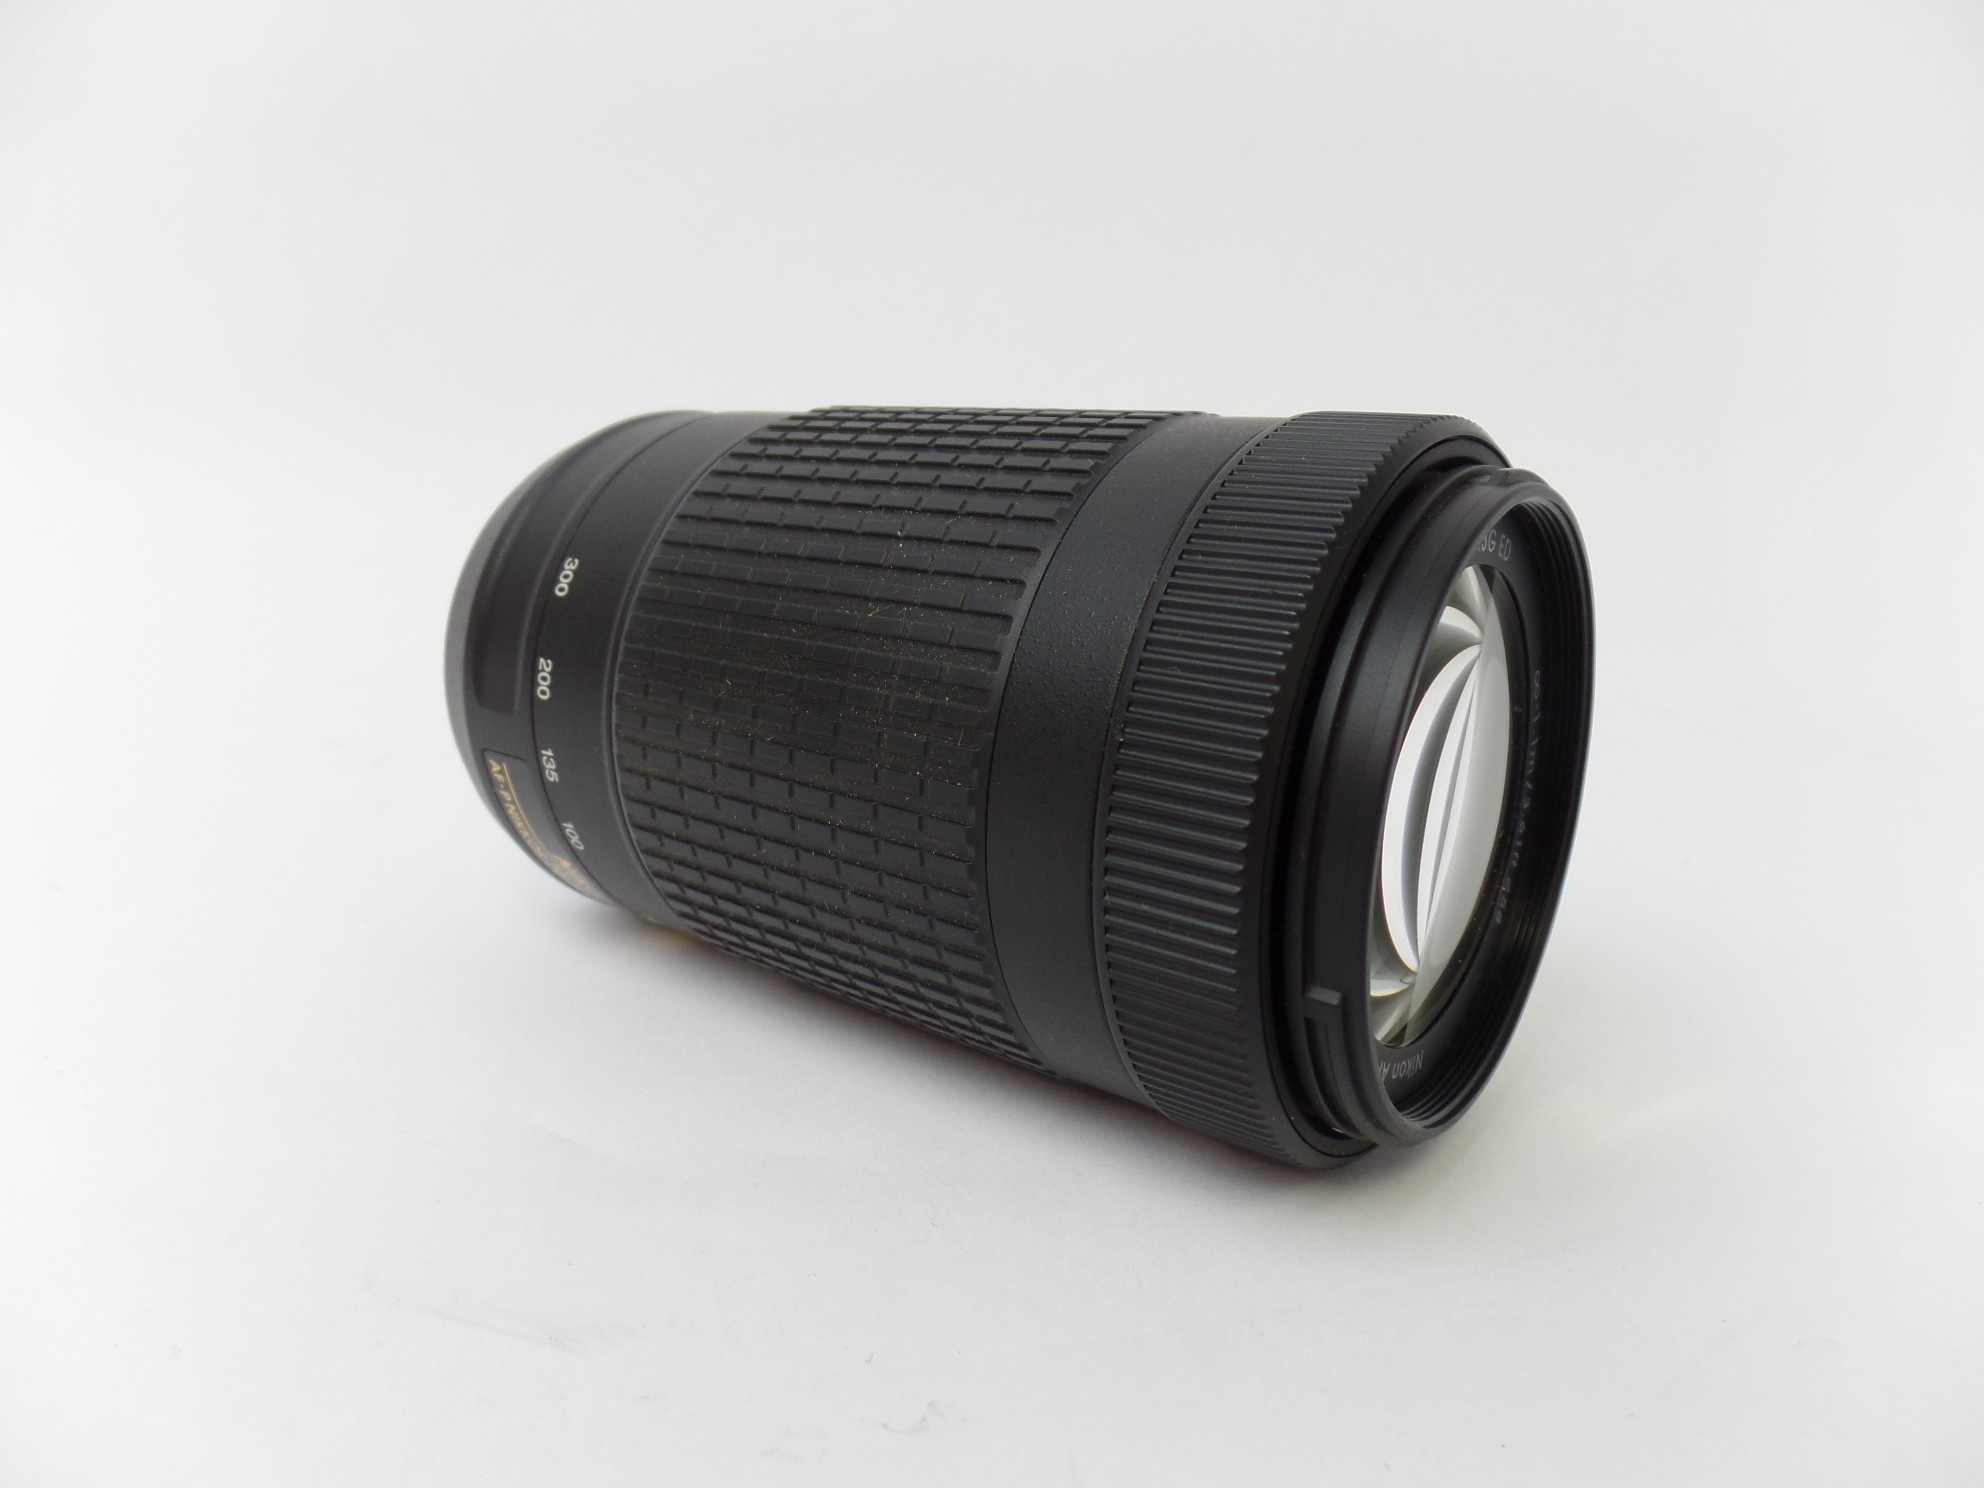 Nikon AF-P DX NIKKOR 70-300mm 1:4.5-6.3G ED Zoom Lens 